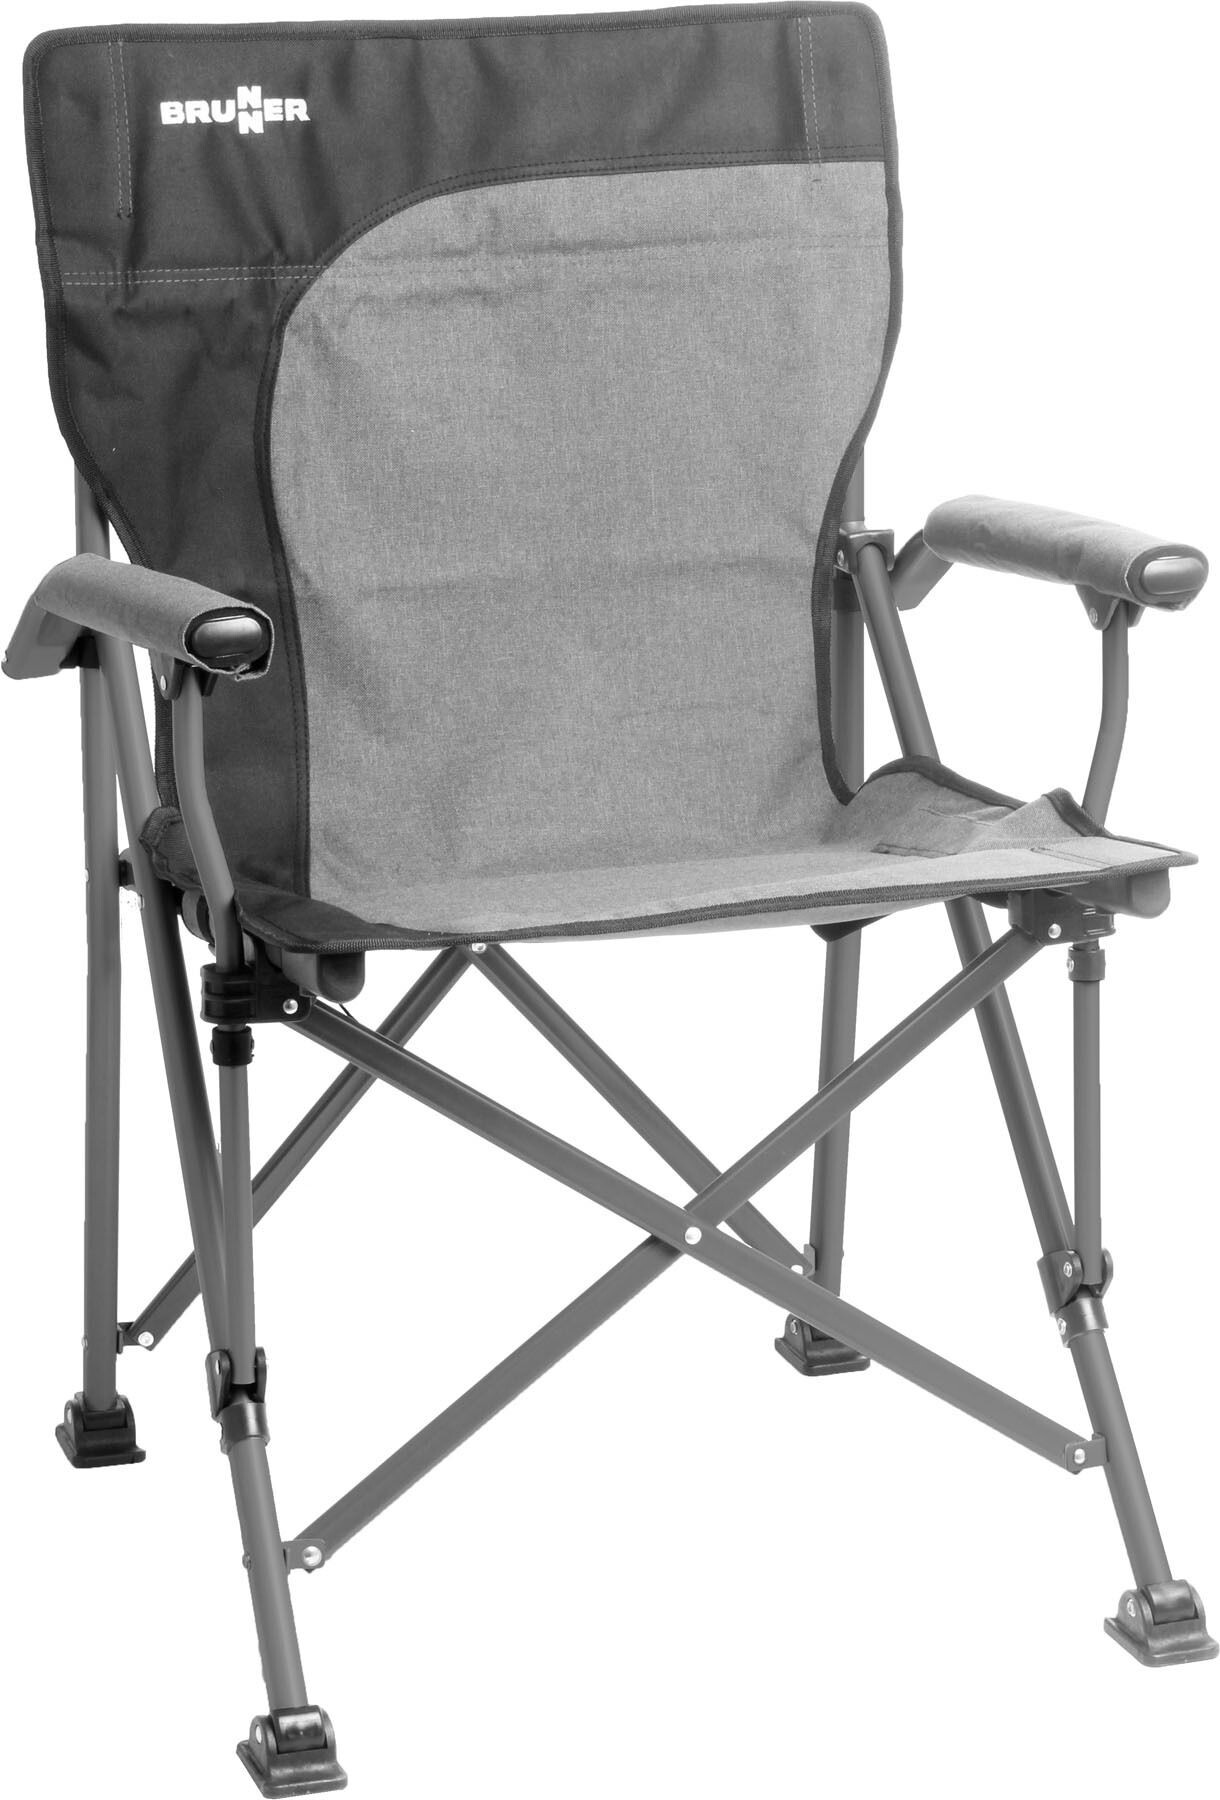 Camping Brunner beinauflage Uni à Chaise Pliante Chaise de camping aravel 3d Black S M L